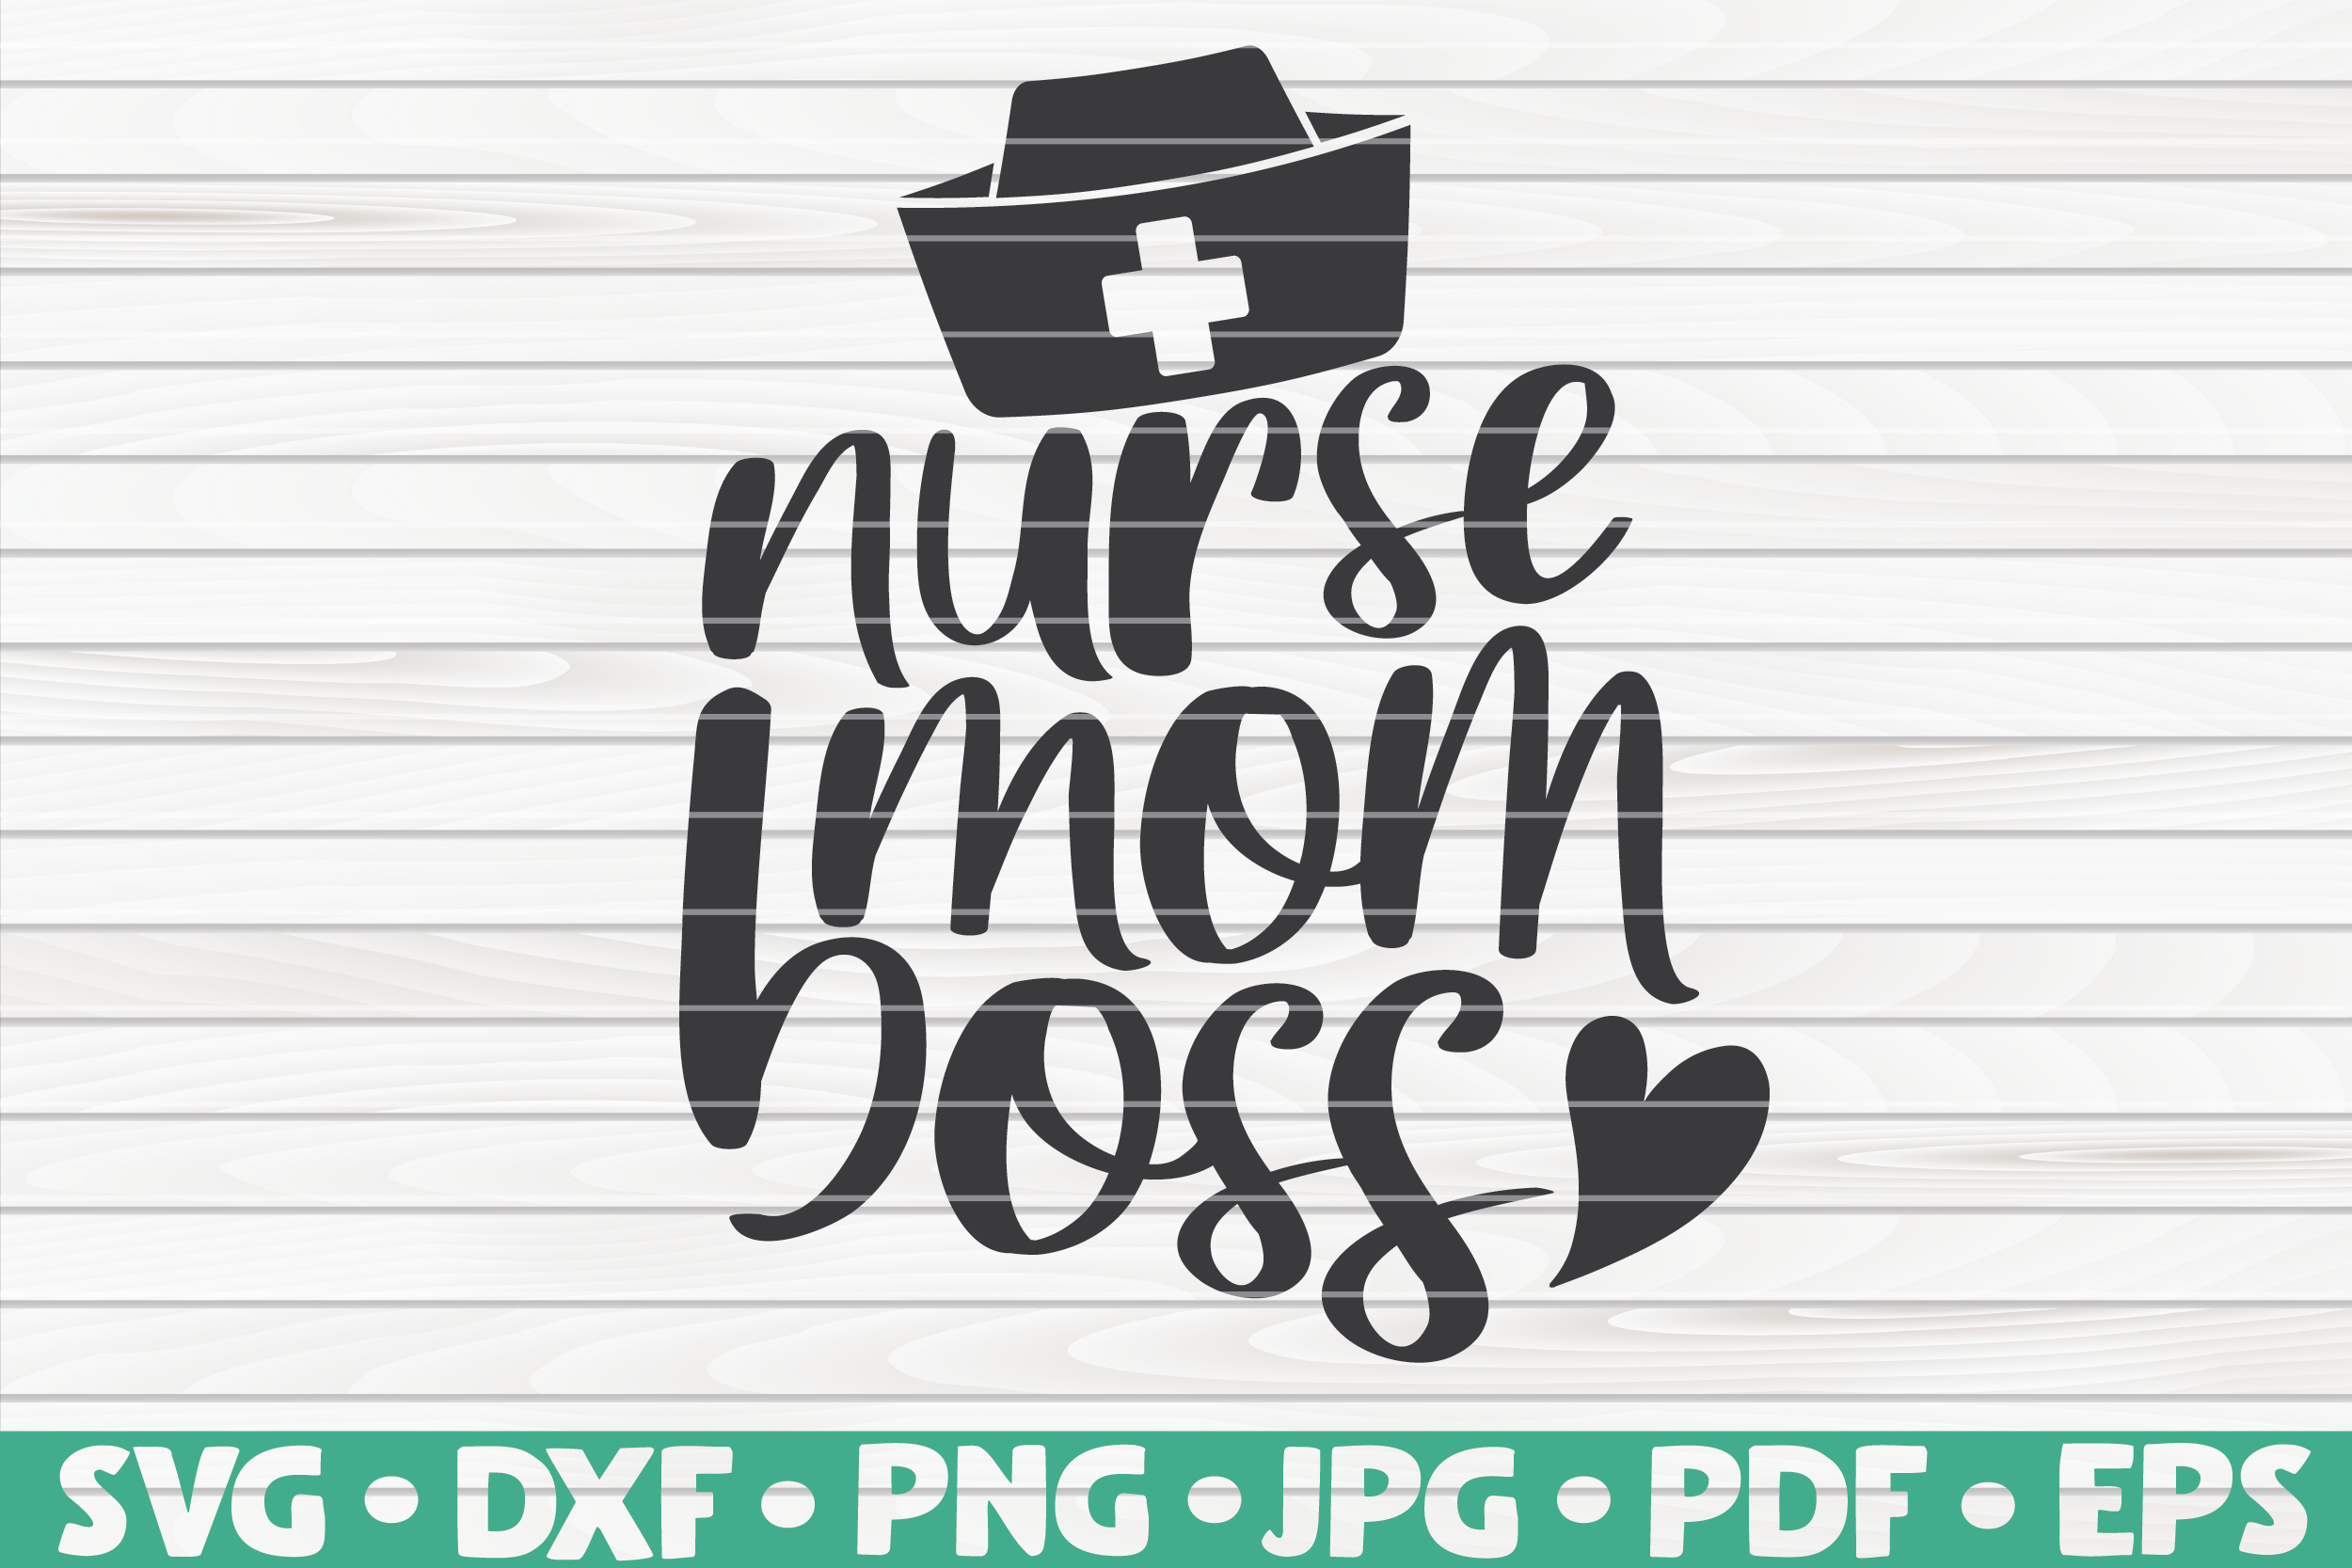 Download Nurse mom boss SVG | Nurse Life By HQDigitalArt ...